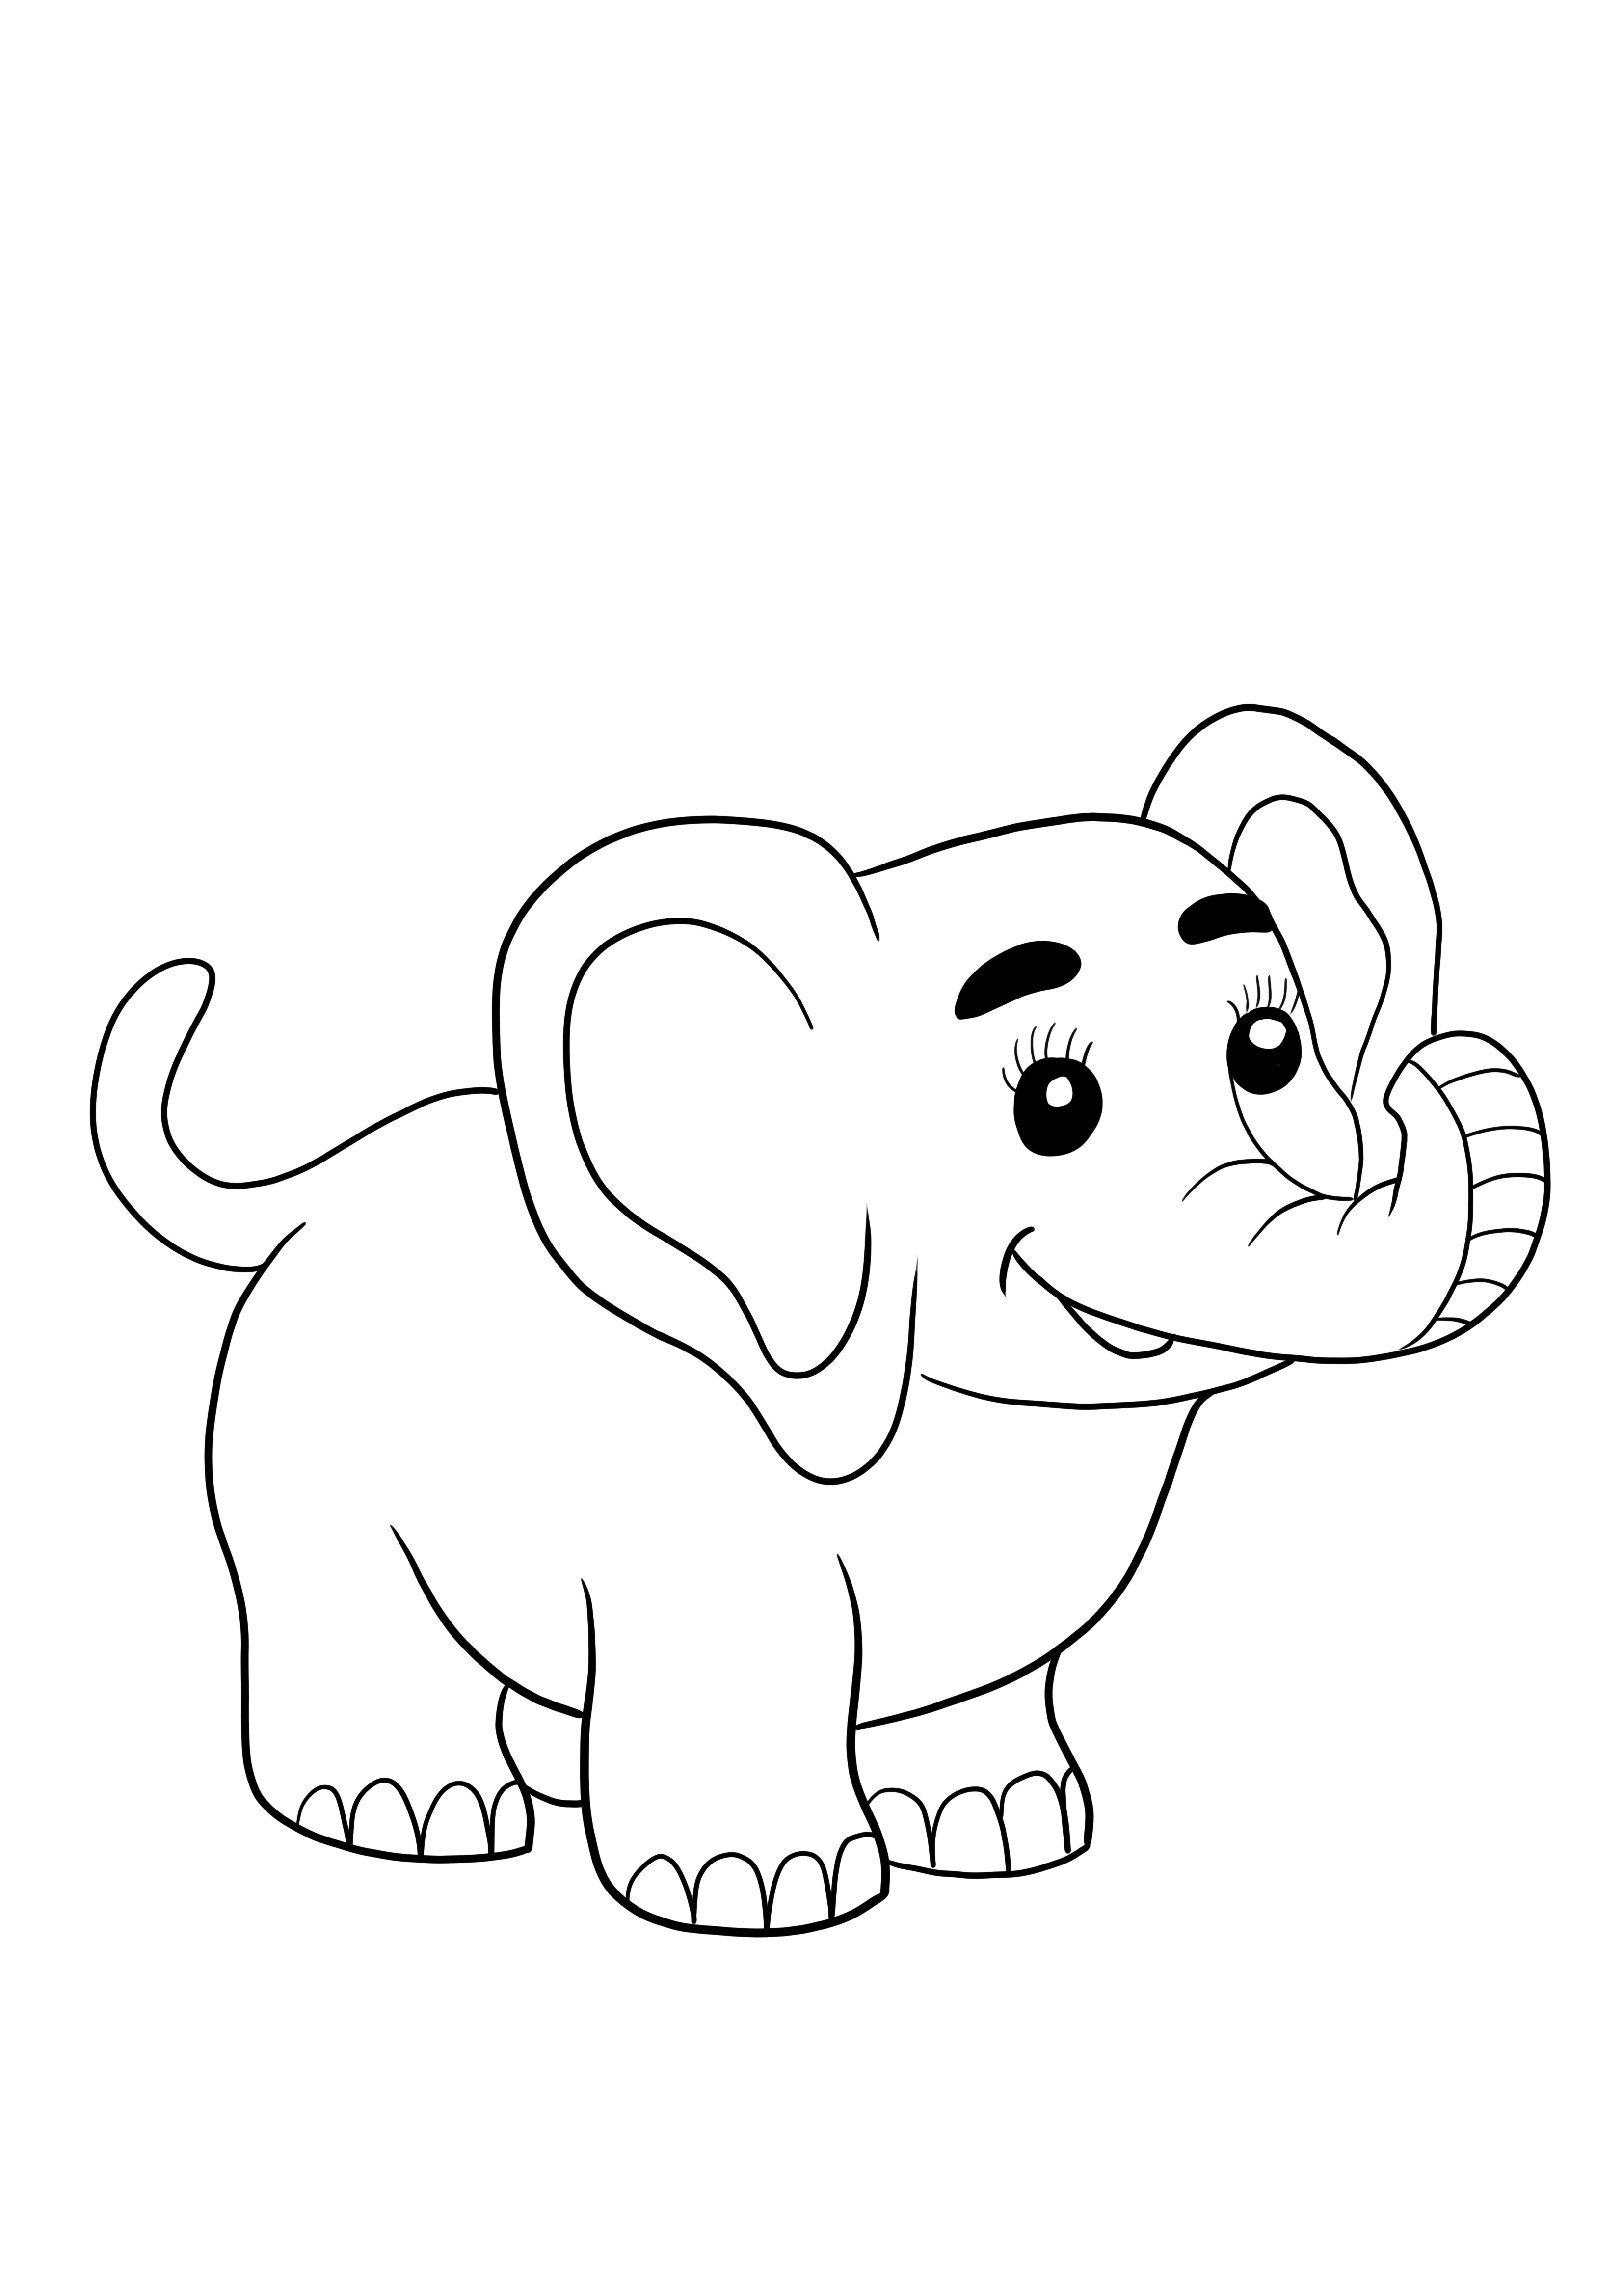 Pui de elefant drăguț care poate fi imprimat și colorat pentru copii de toate vârstele